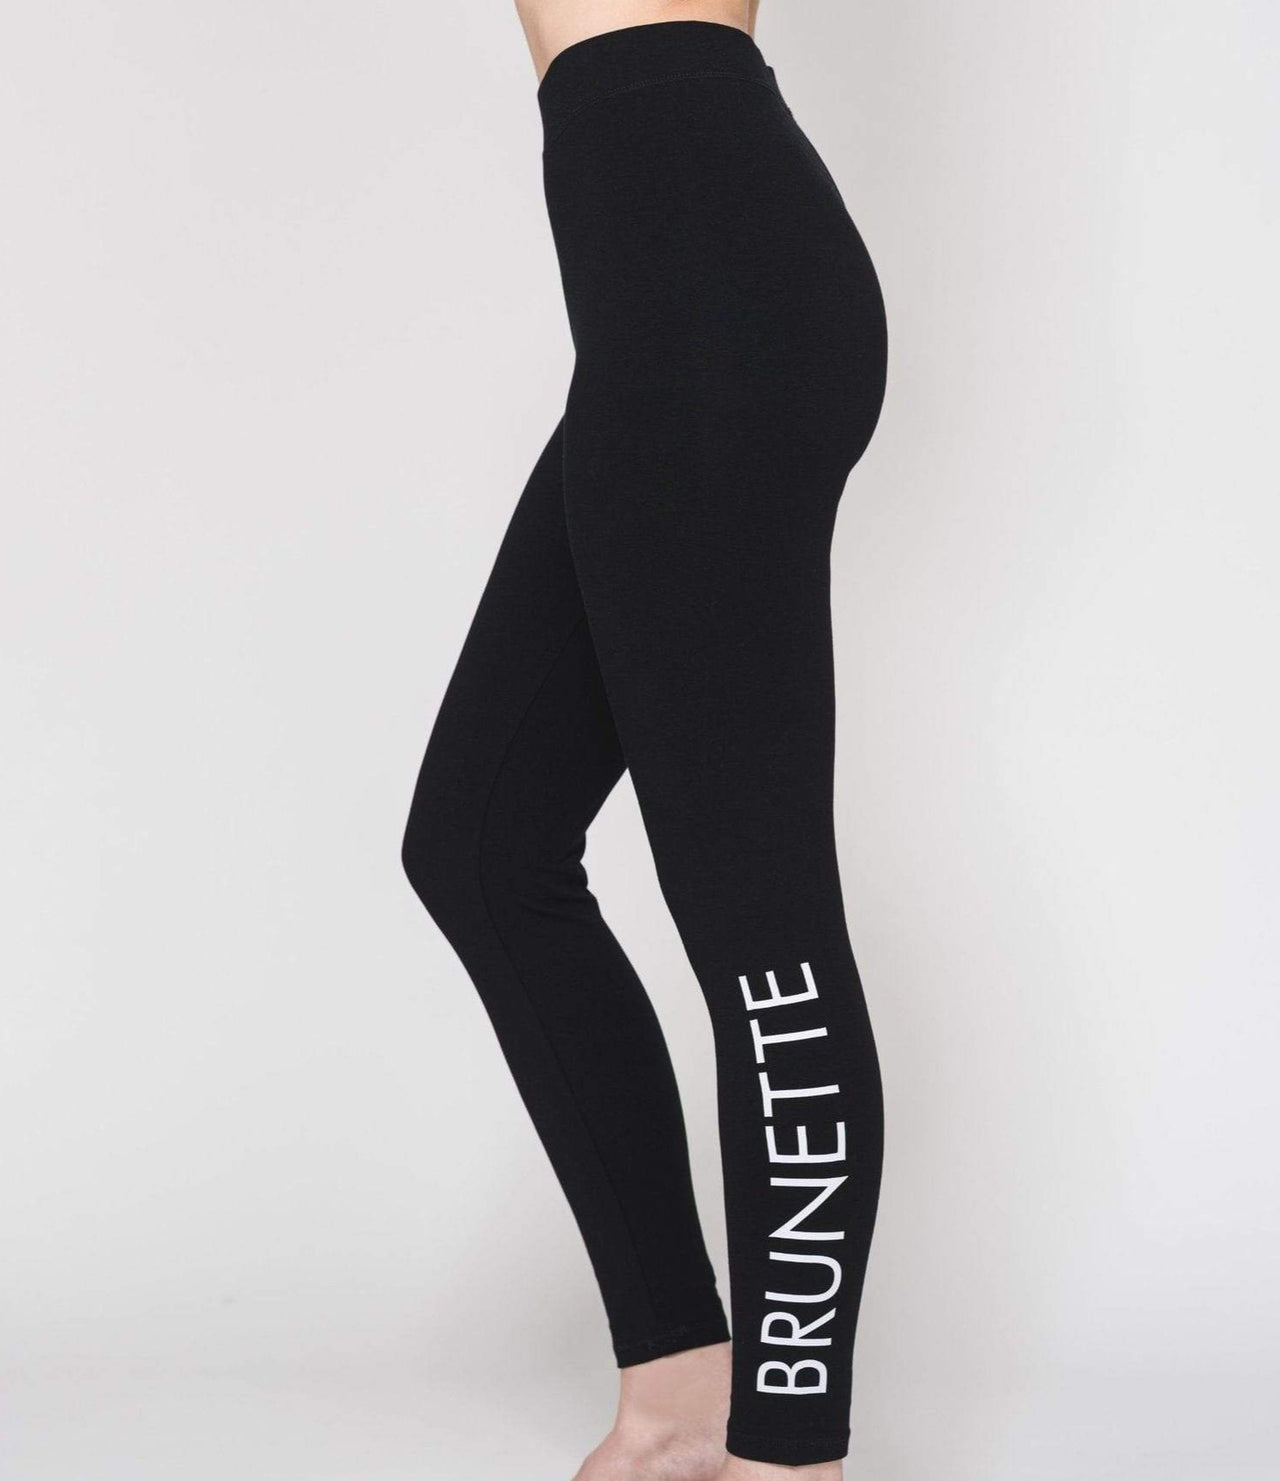 Brunette Legging, Legging/ Tights Bottom by Brunette the Label | LIT Boutique